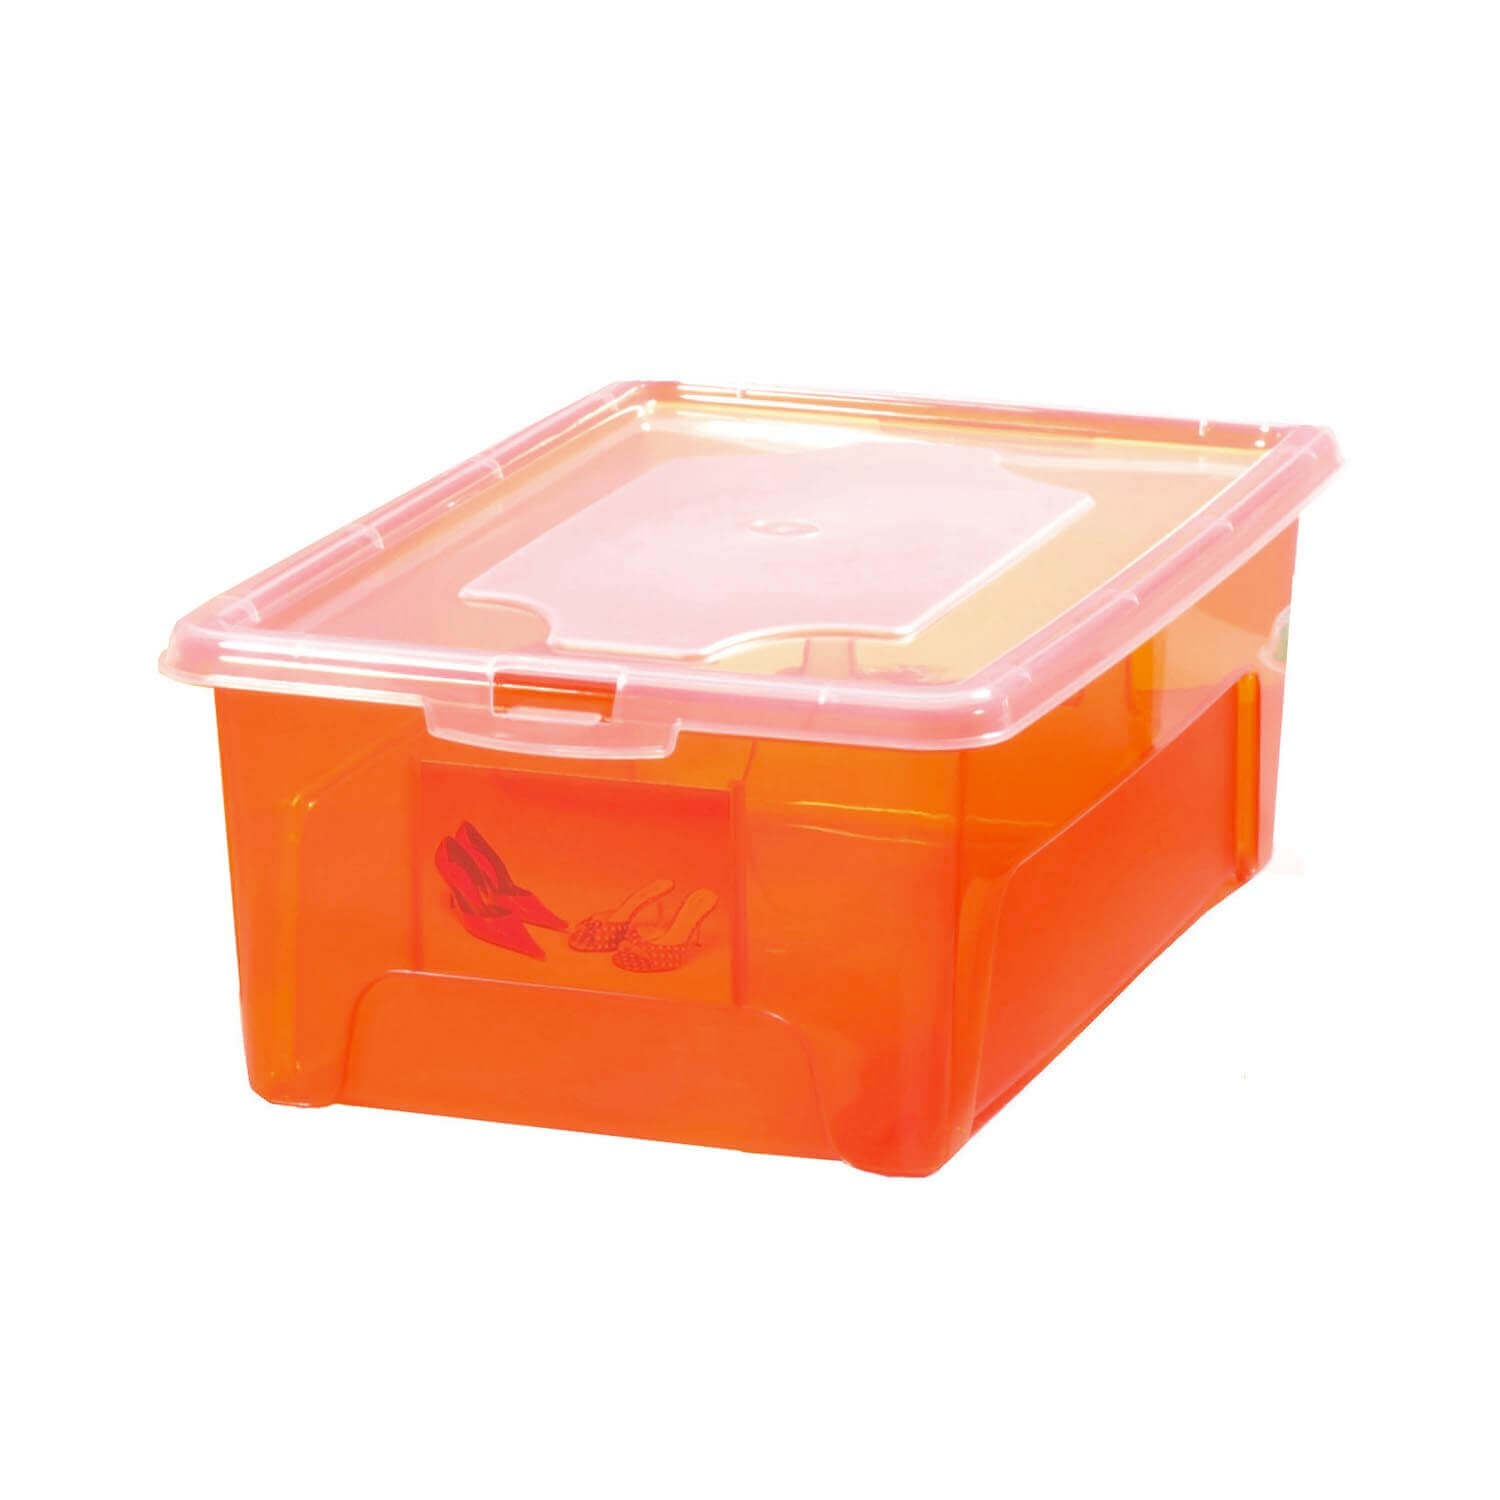 Aufbewahrungsbox "Easybox" 10 L in orange, Kunststoffbox